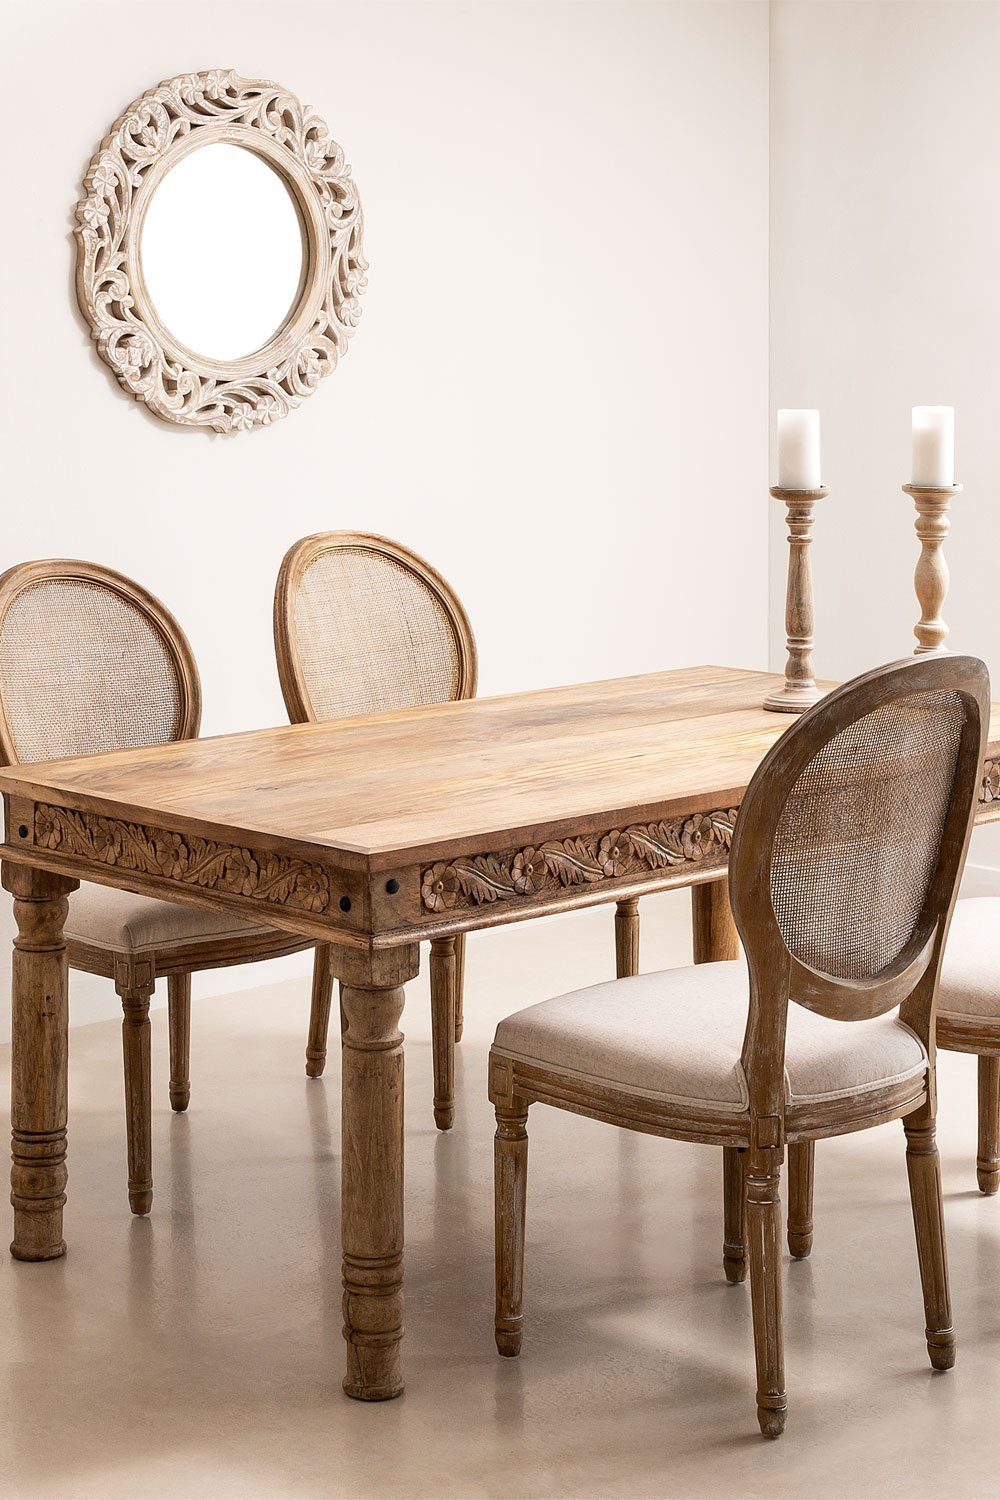 Set tavolo rettangolare in legno di mango Taraz (160x90 cm) e 4 sedie da pranzo in tessuto Sunna, immagine della galleria 1